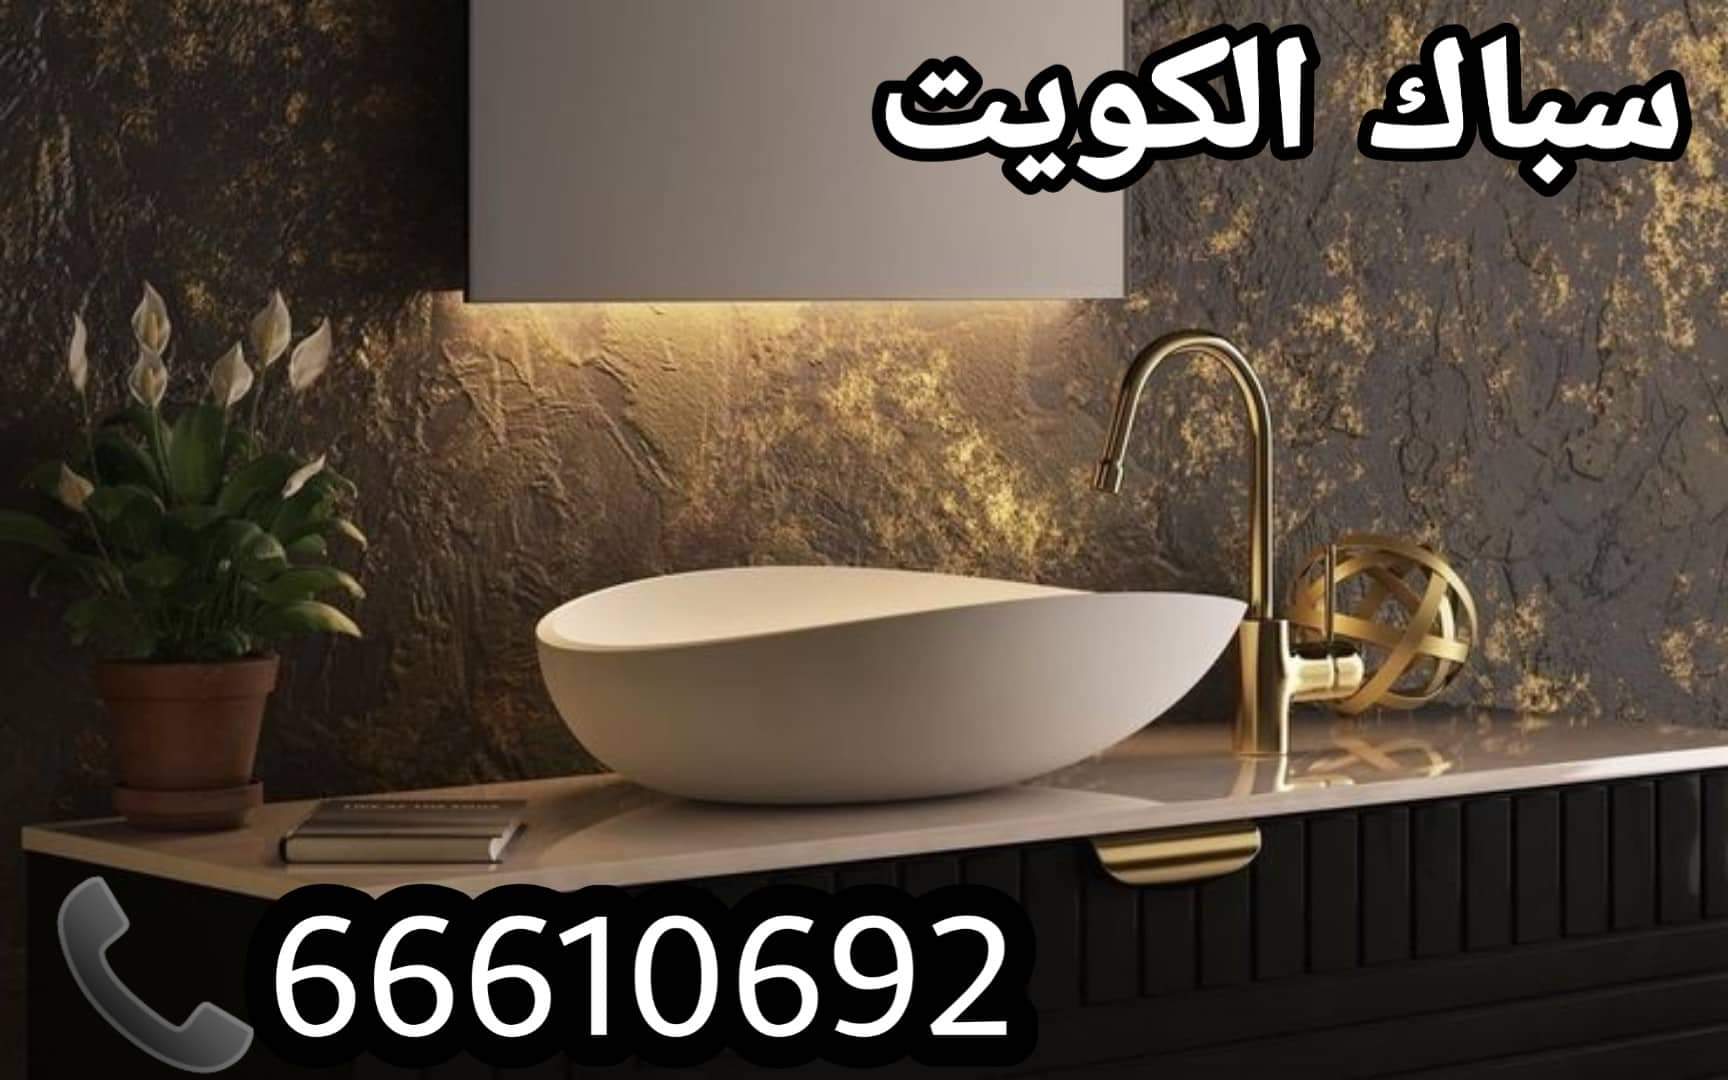 سباك المنقف / 66610692 / صيانة وتركيب فني صحي الاحمدي